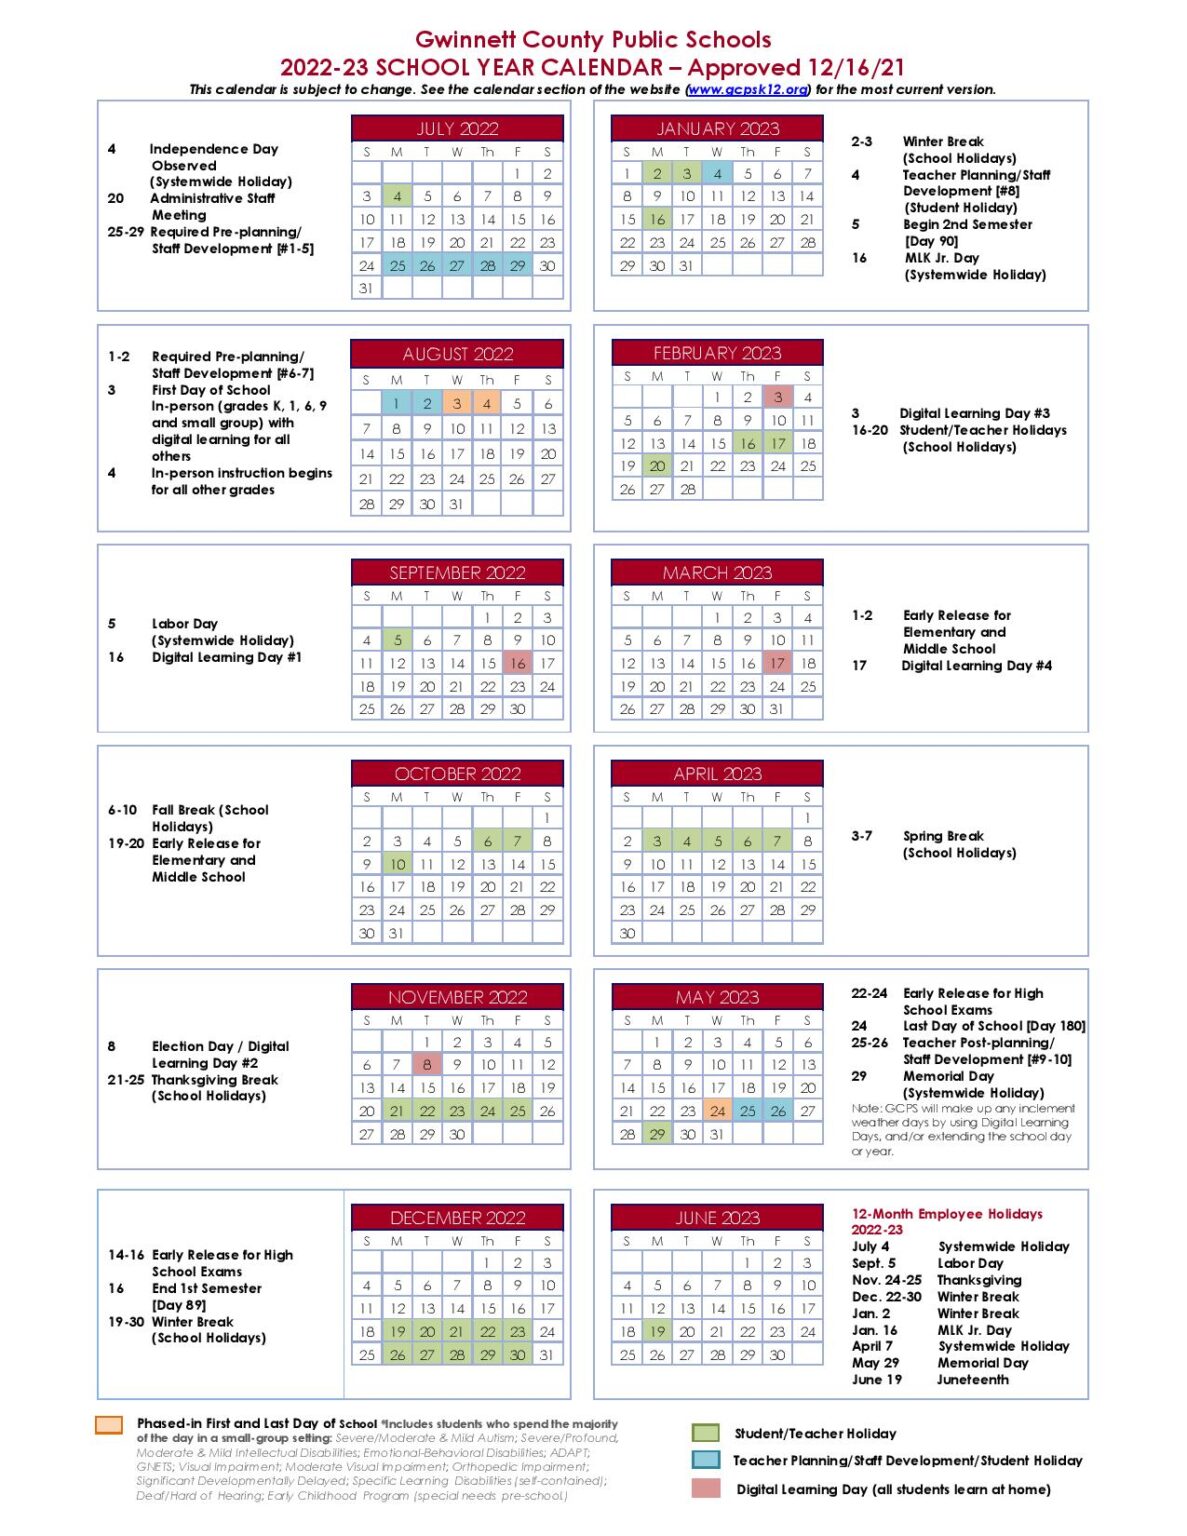 Gwinnett County Public Schools Calendar Holidays 2022 2023